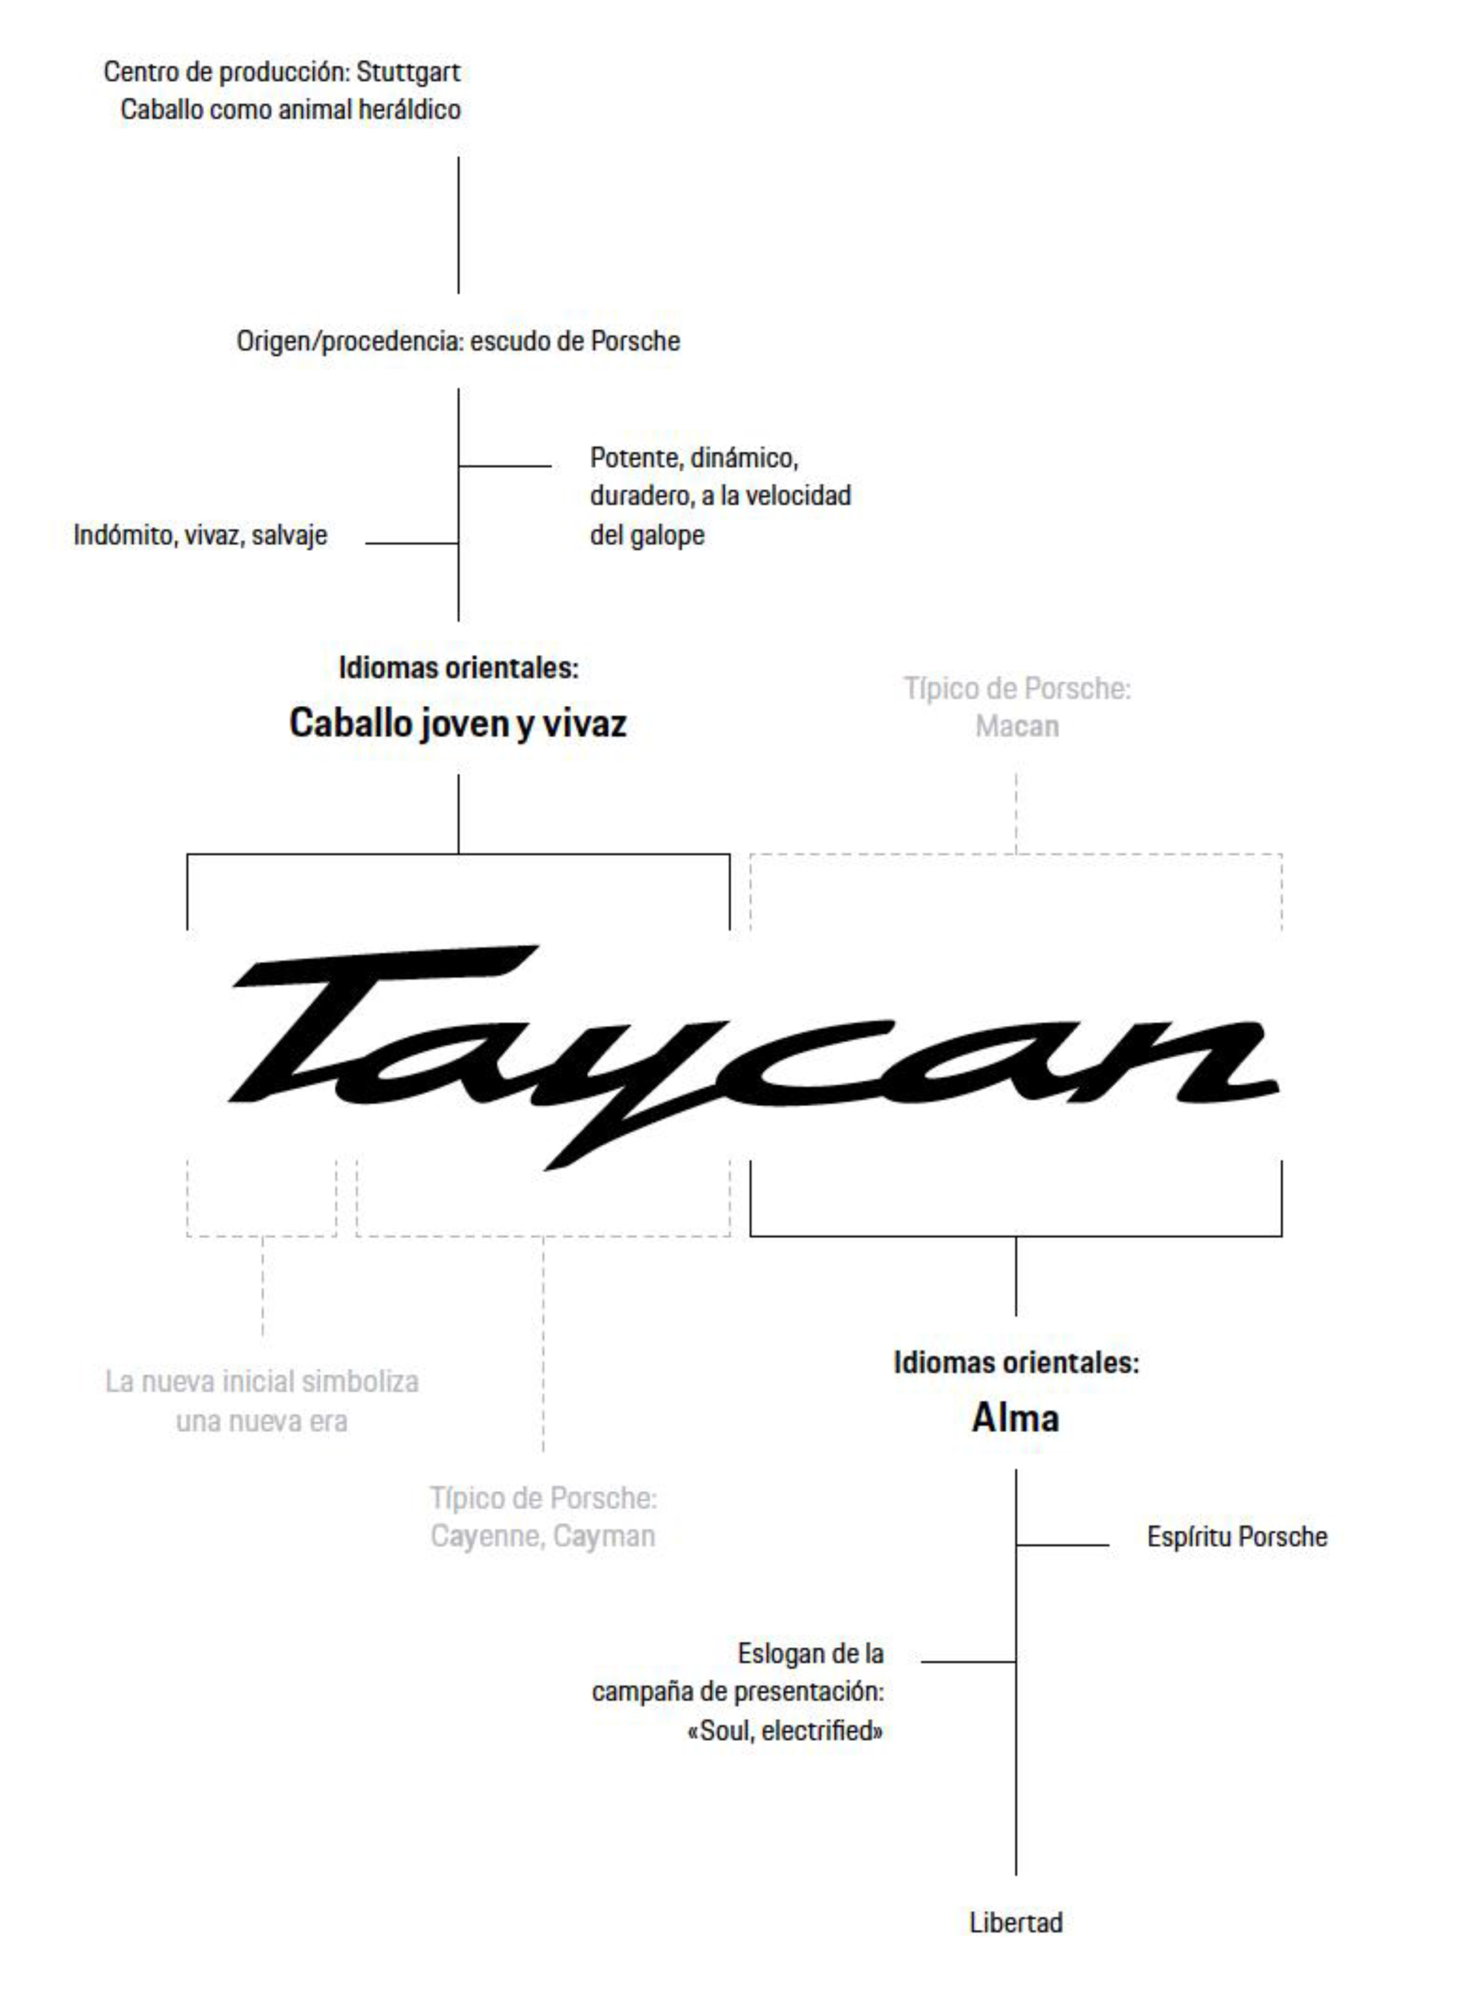 Porsche devela el origen y el significa del nombre Taycan